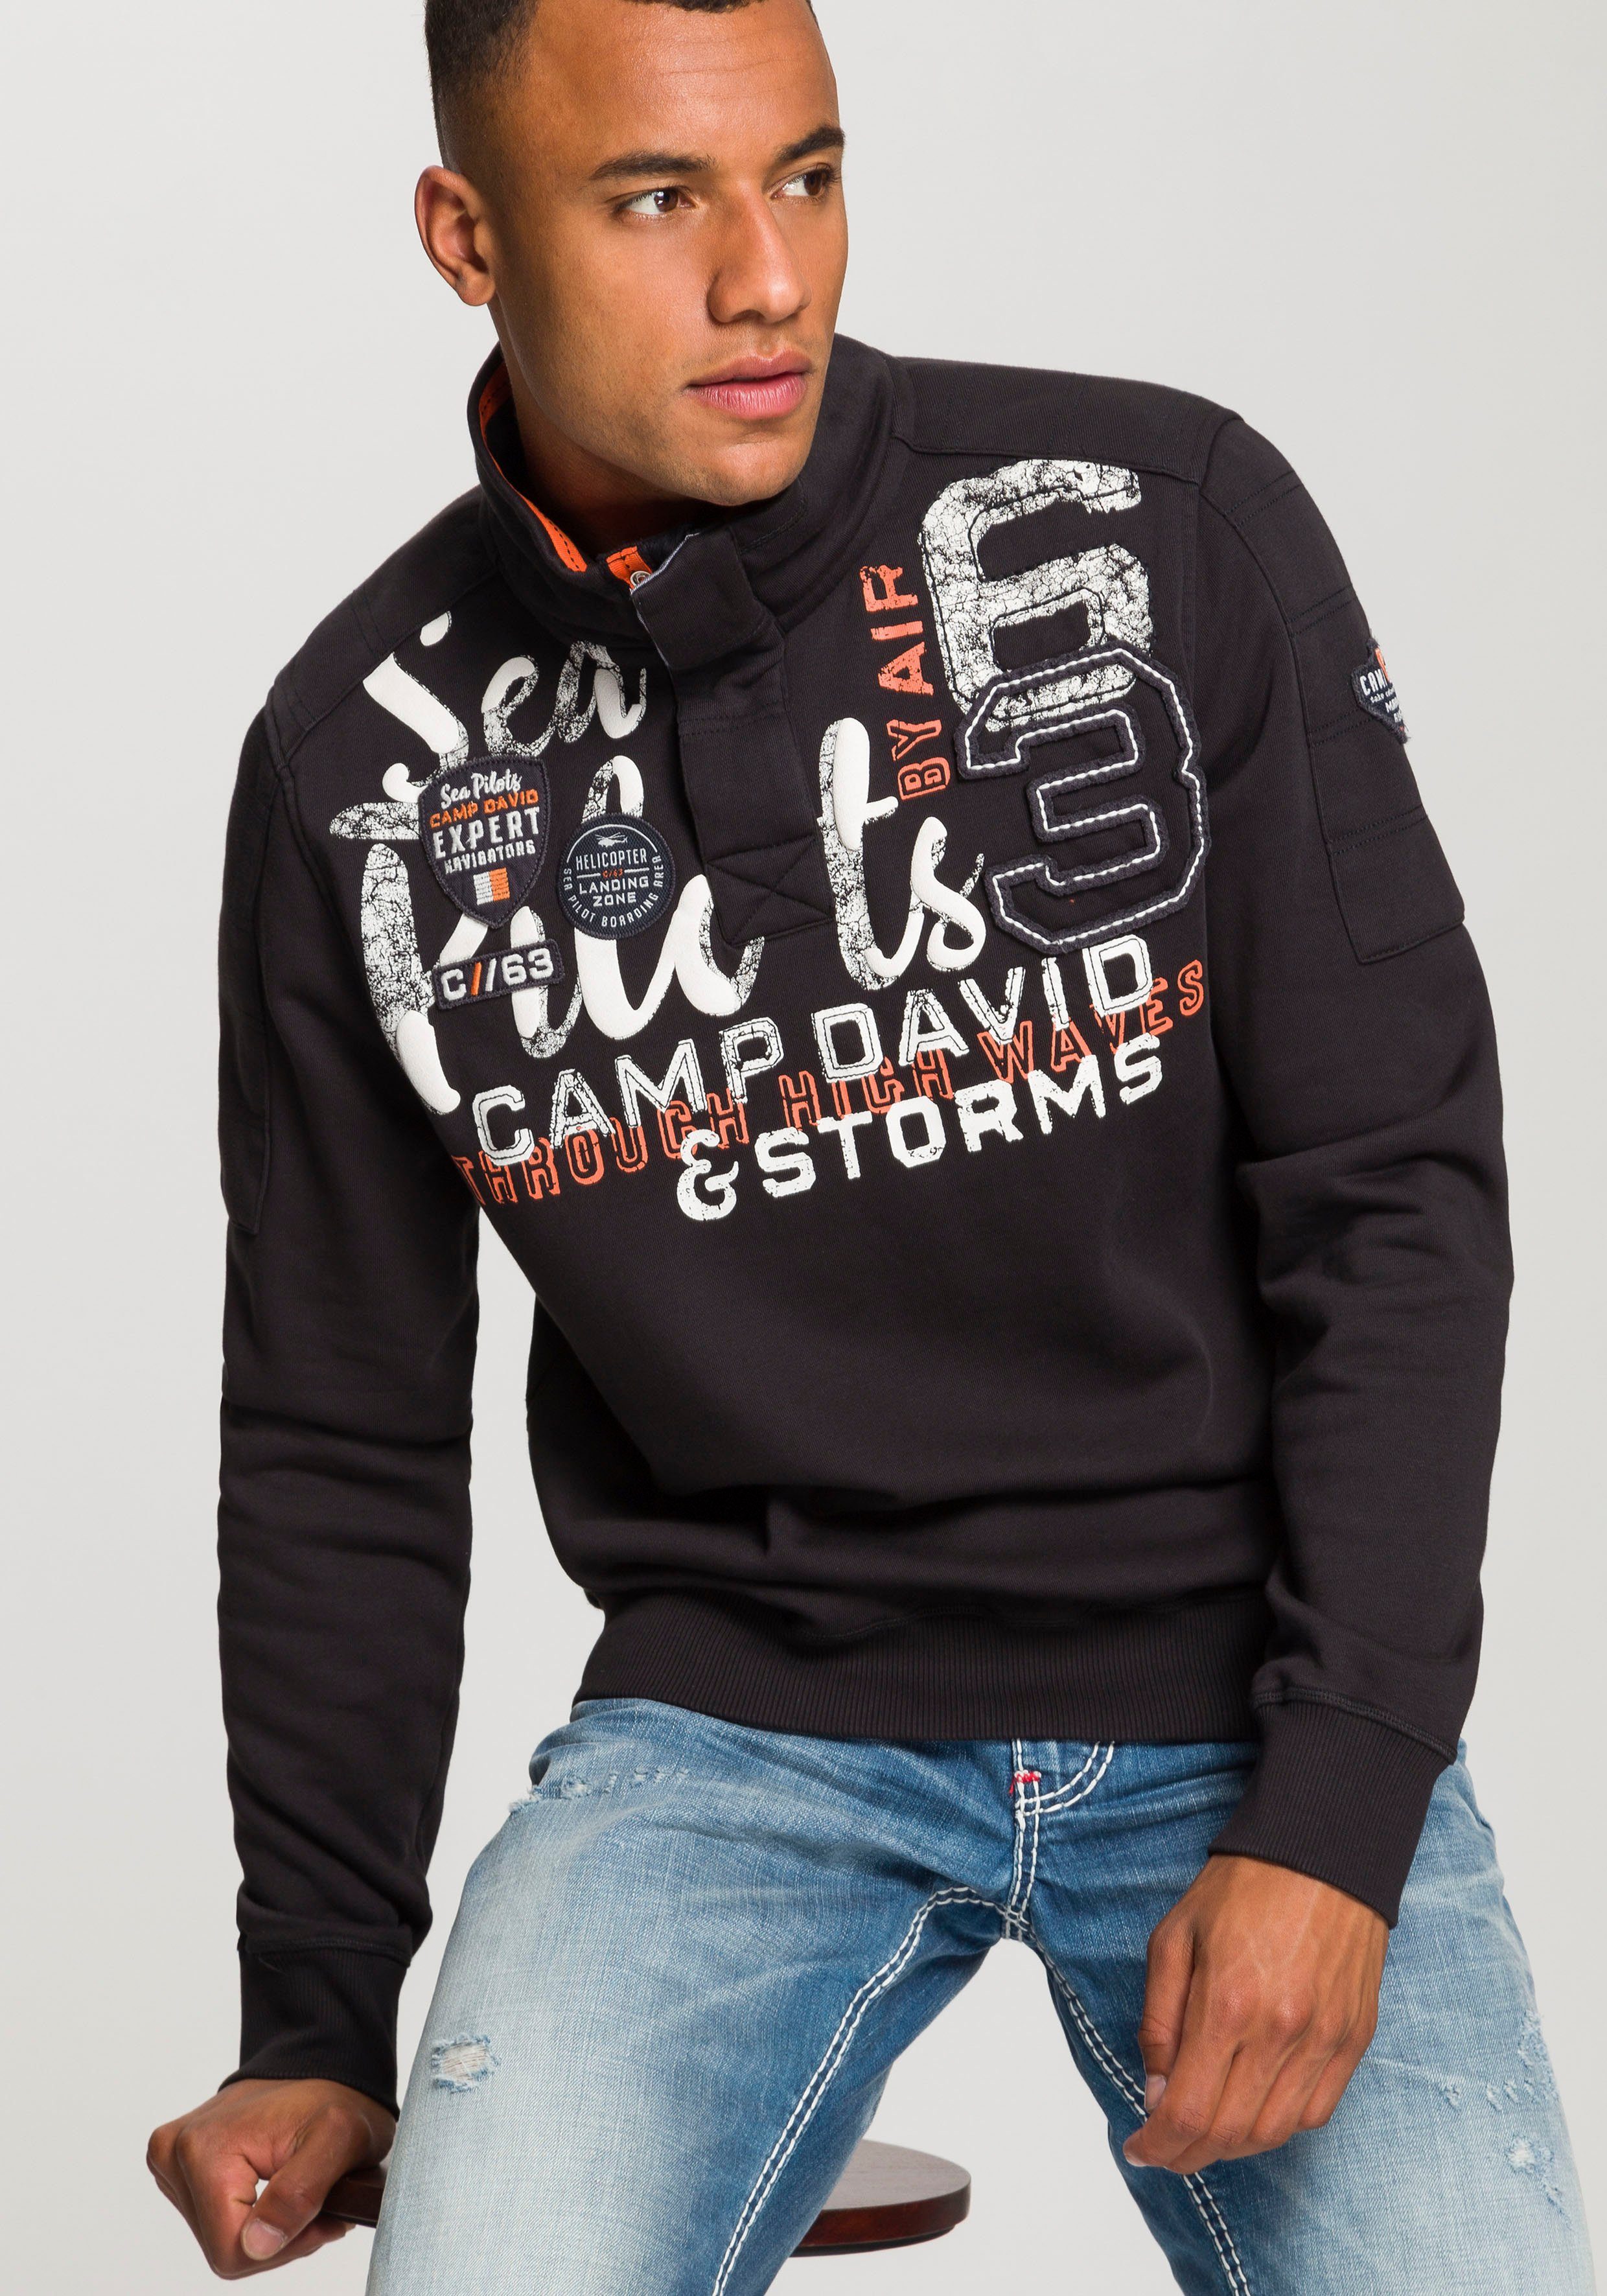 CAMP DAVID Sweatshirt mit großem Logofrontprint | OTTO